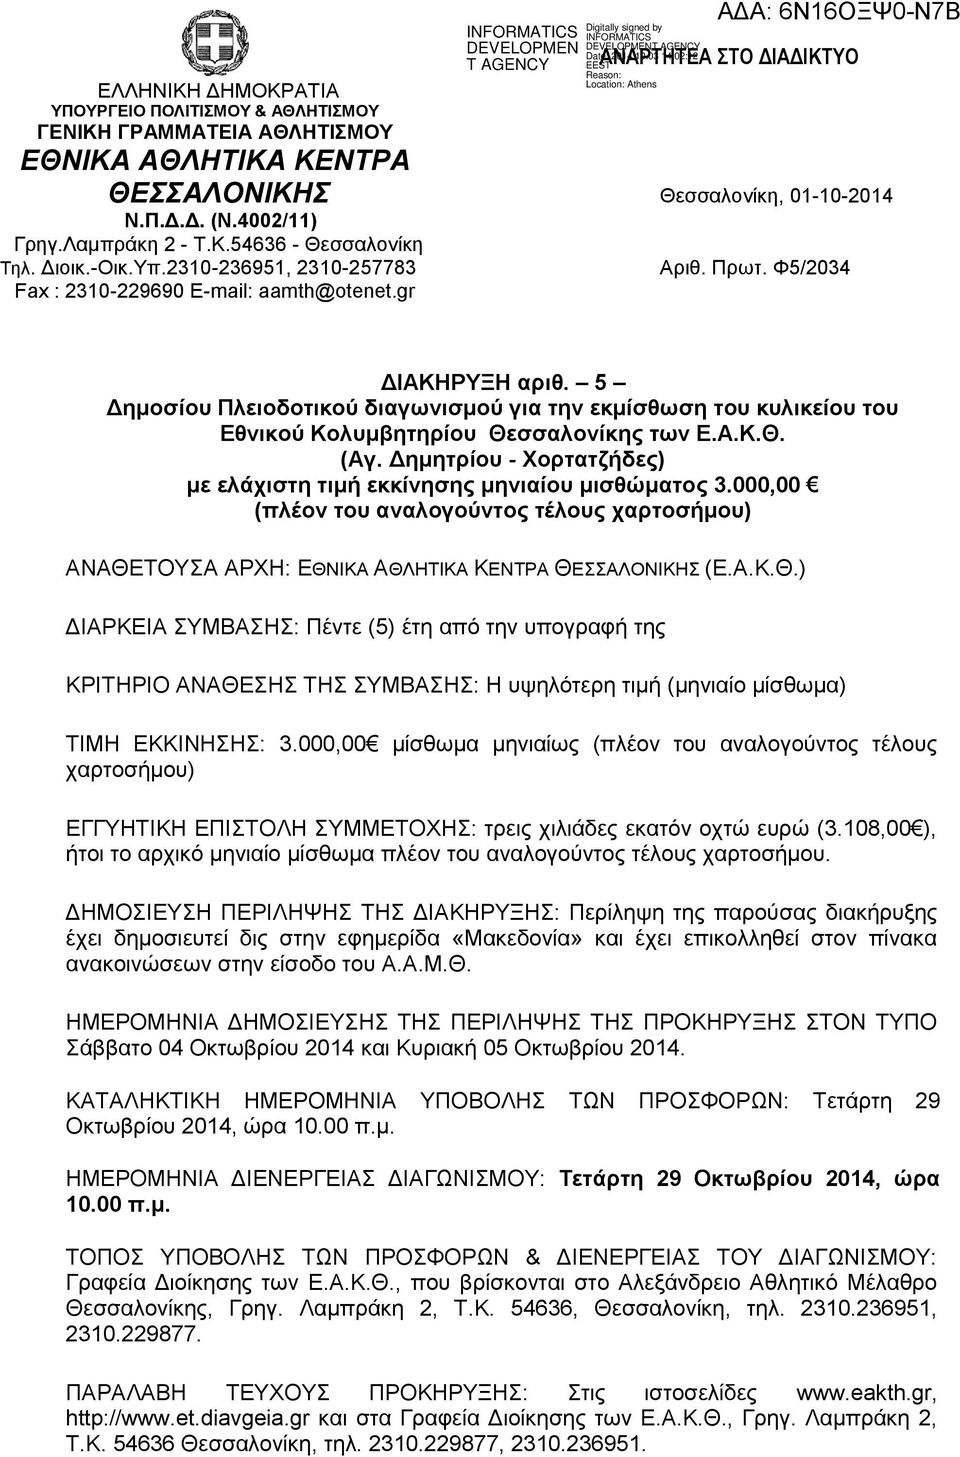 5 Δημοσίου Πλειοδοτικού διαγωνισμού για την εκμίσθωση του κυλικείου του Εθνικού Κολυμβητηρίου Θεσσαλονίκης των Ε.Α.Κ.Θ. (Αγ. Δημητρίου - Χορτατζήδες) με ελάχιστη τιμή εκκίνησης μηνιαίου μισθώματος 3.